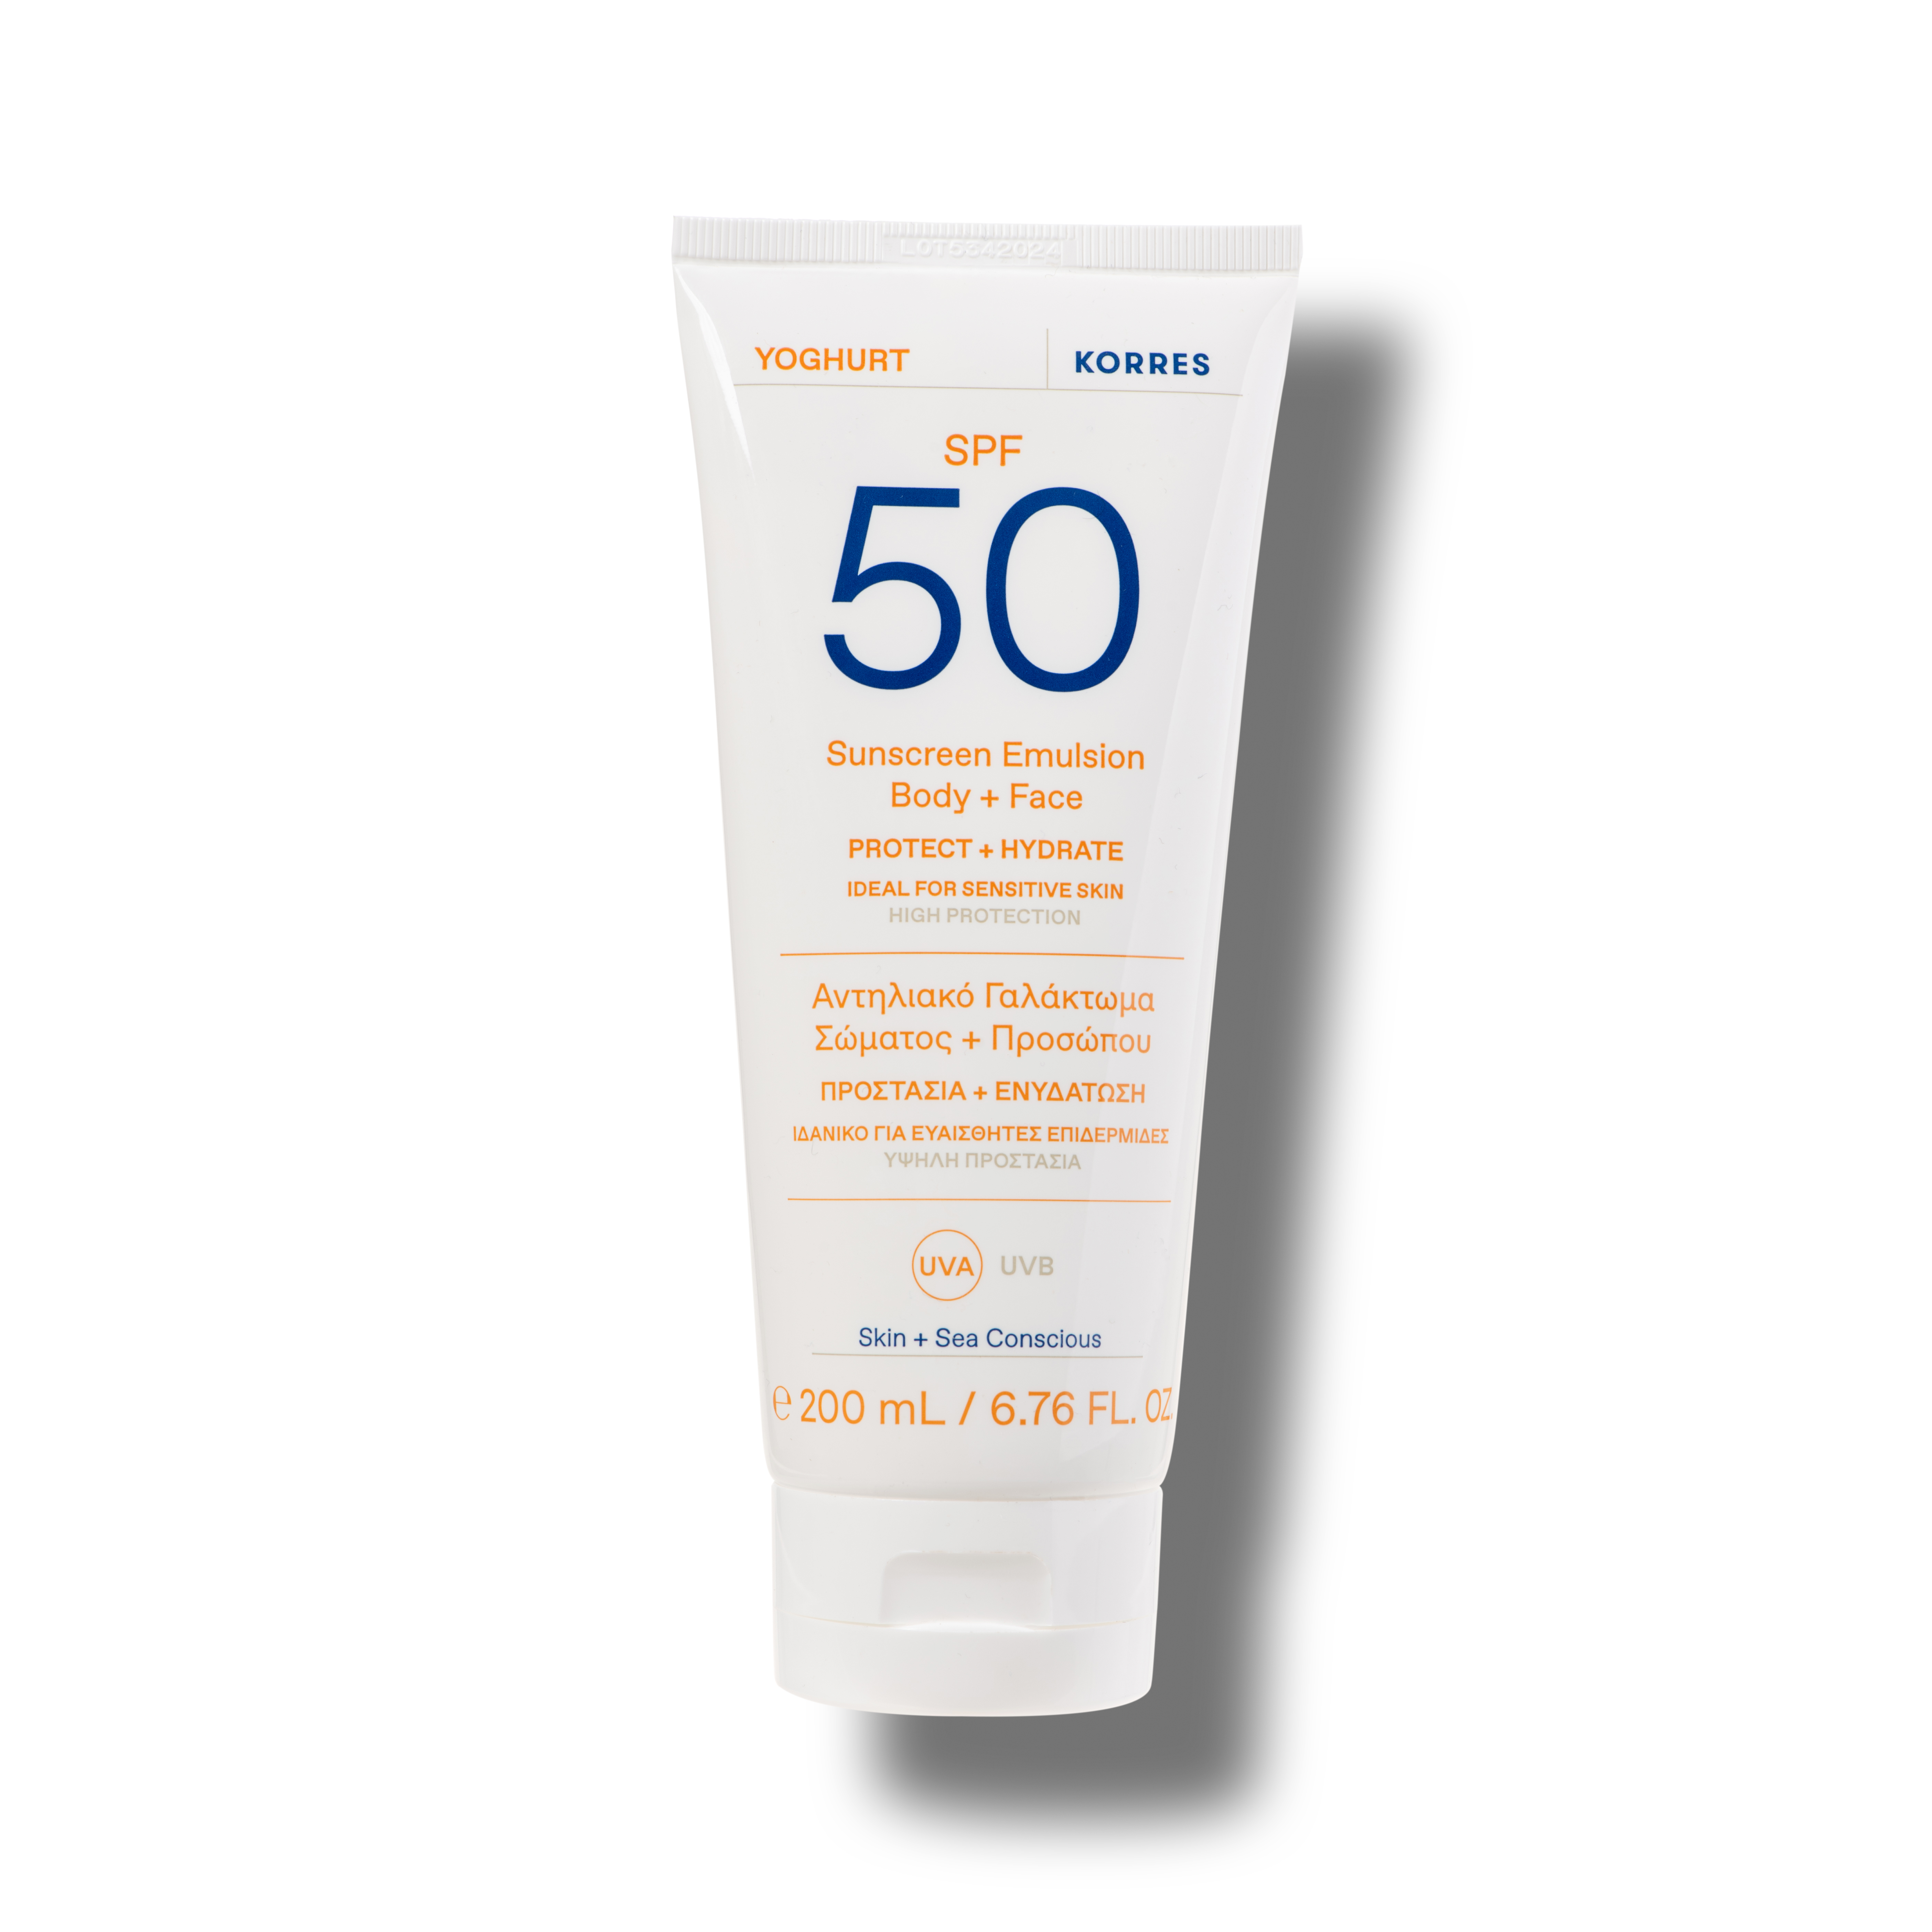 YOGHURT Sonnenschutz-Emulsion für Körper und Gesicht SPF50, 200ml Kopie